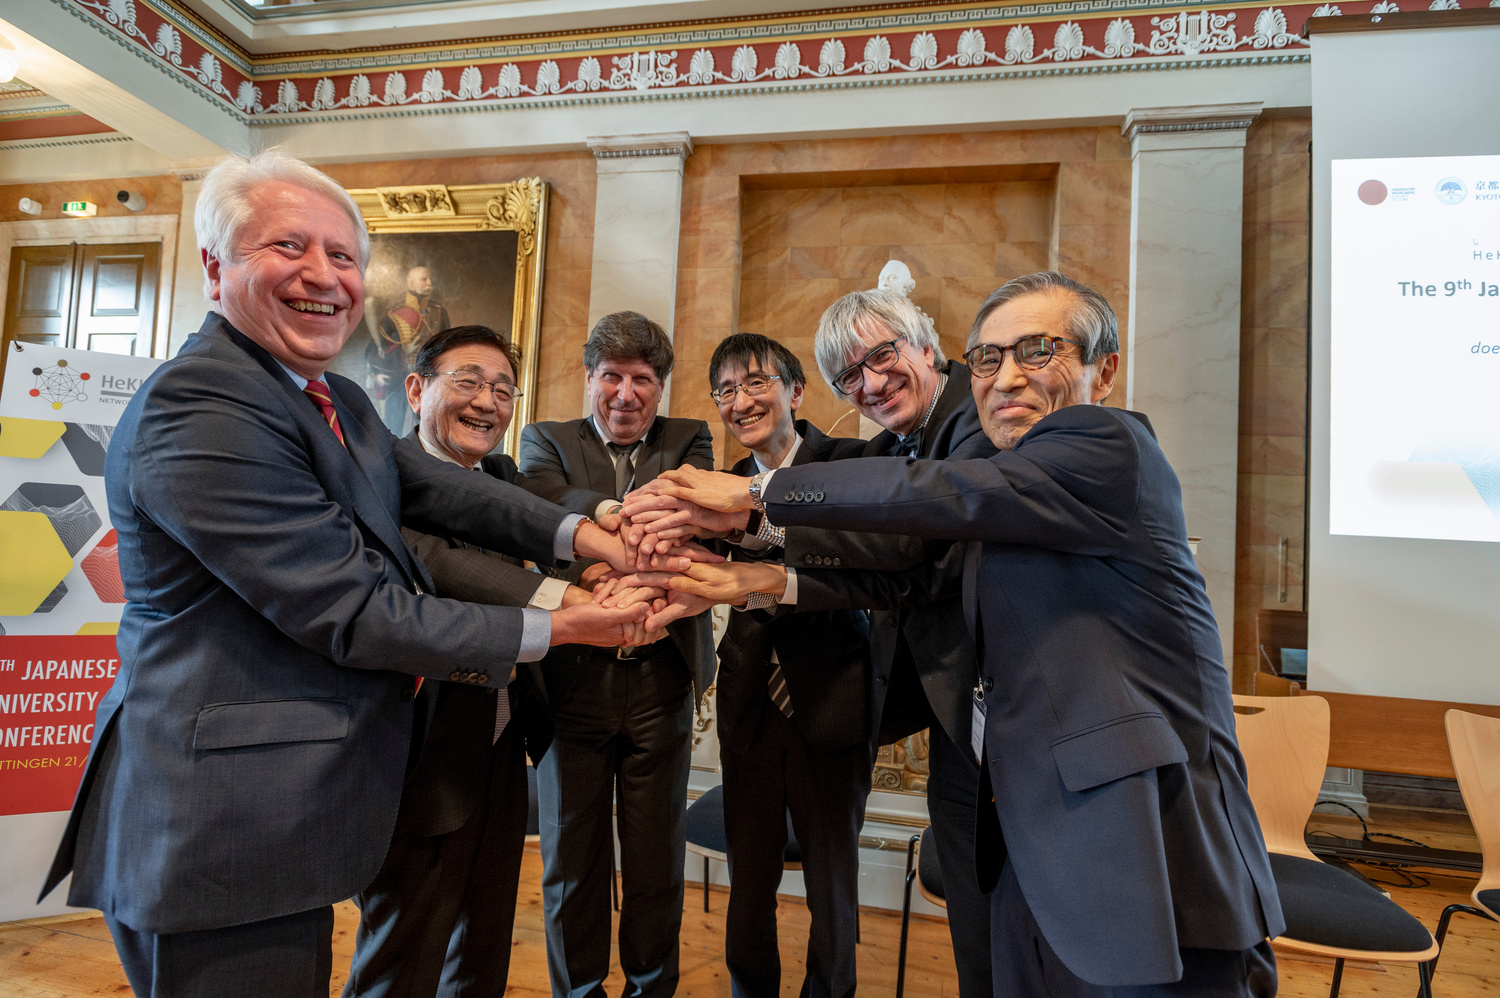 Die sechs Partneruniversitäten des deutsch-japanischen Hochschulnetzwerks HeKKSaGOn haben zum Ende ihres Rektorentreffens in Göttingen weitere gemeinsame Aktivitäten vereinbart.